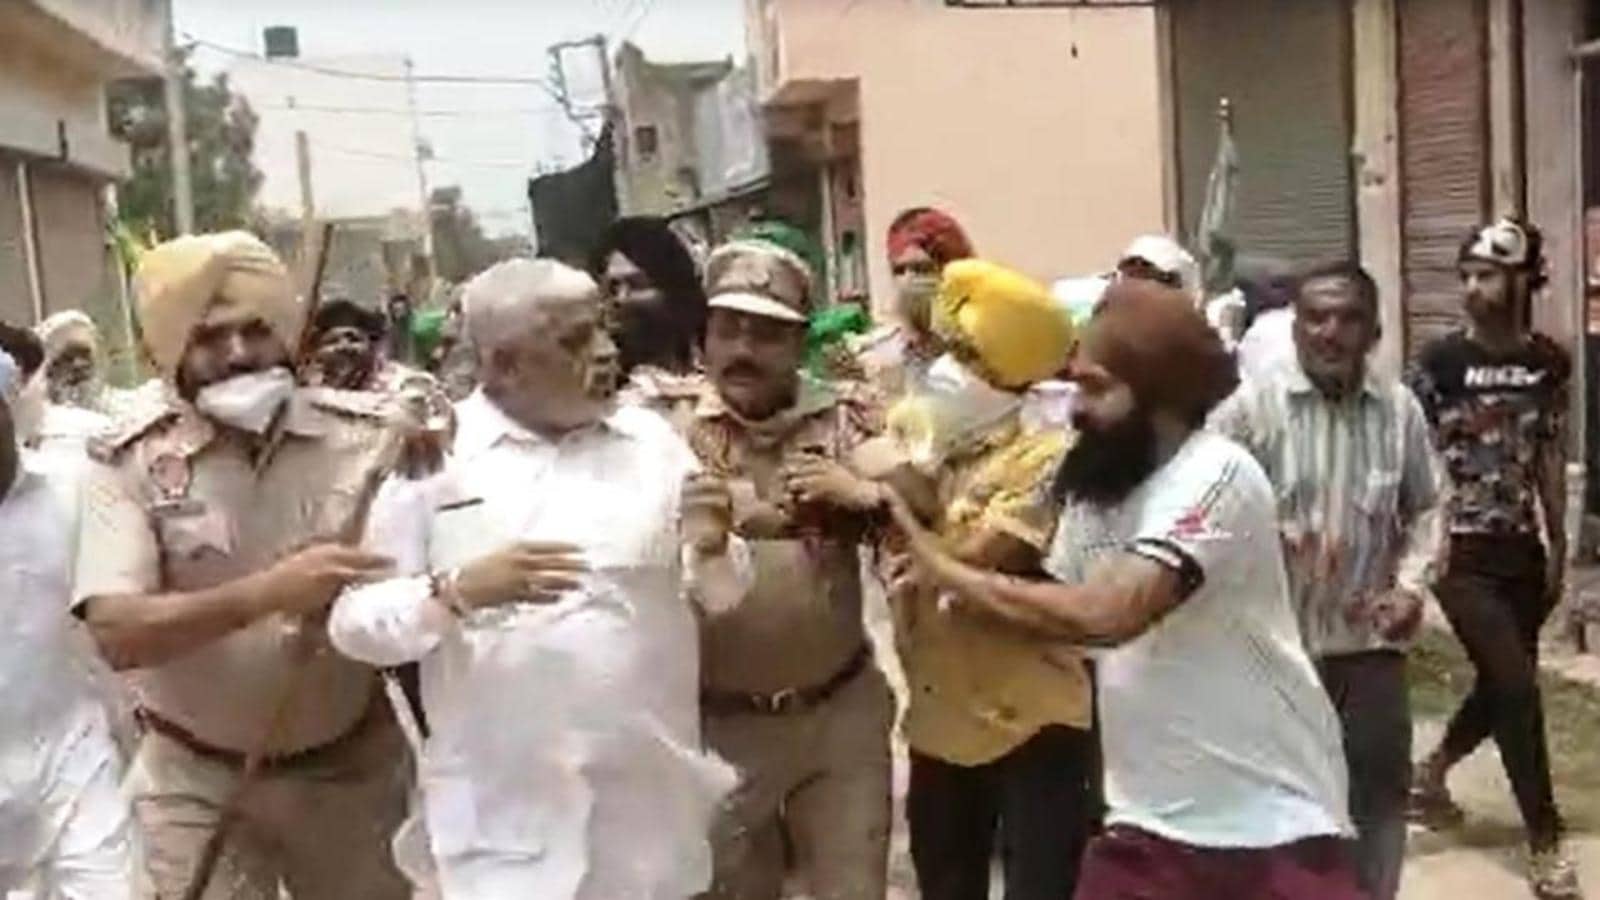 Punjab: Farmers manhandle BJP leaders, hold them 'hostage' - Hindustan Times